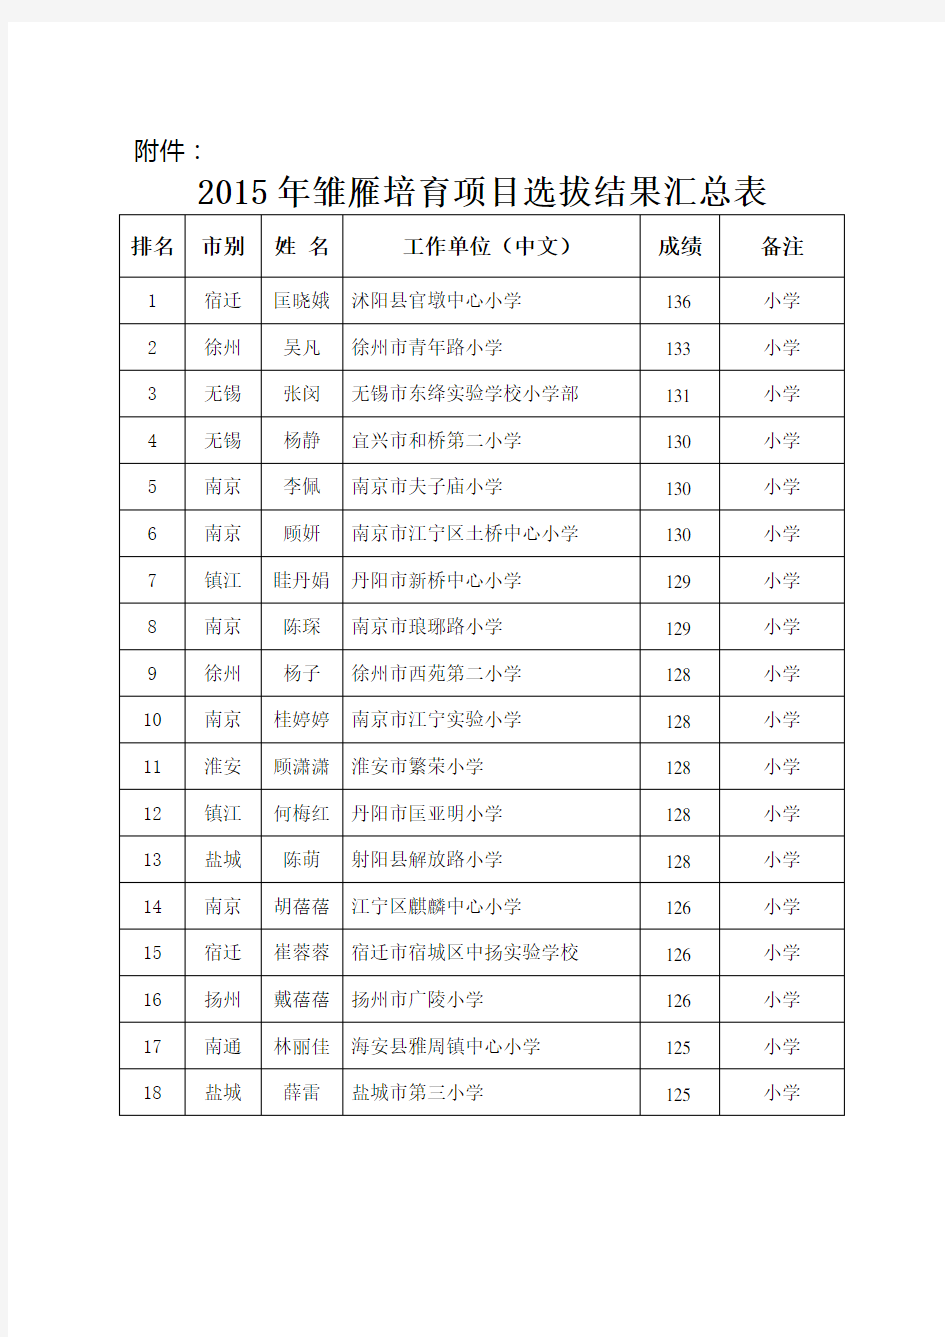 2015年雏雁培育项目选拔结果名录(306人)